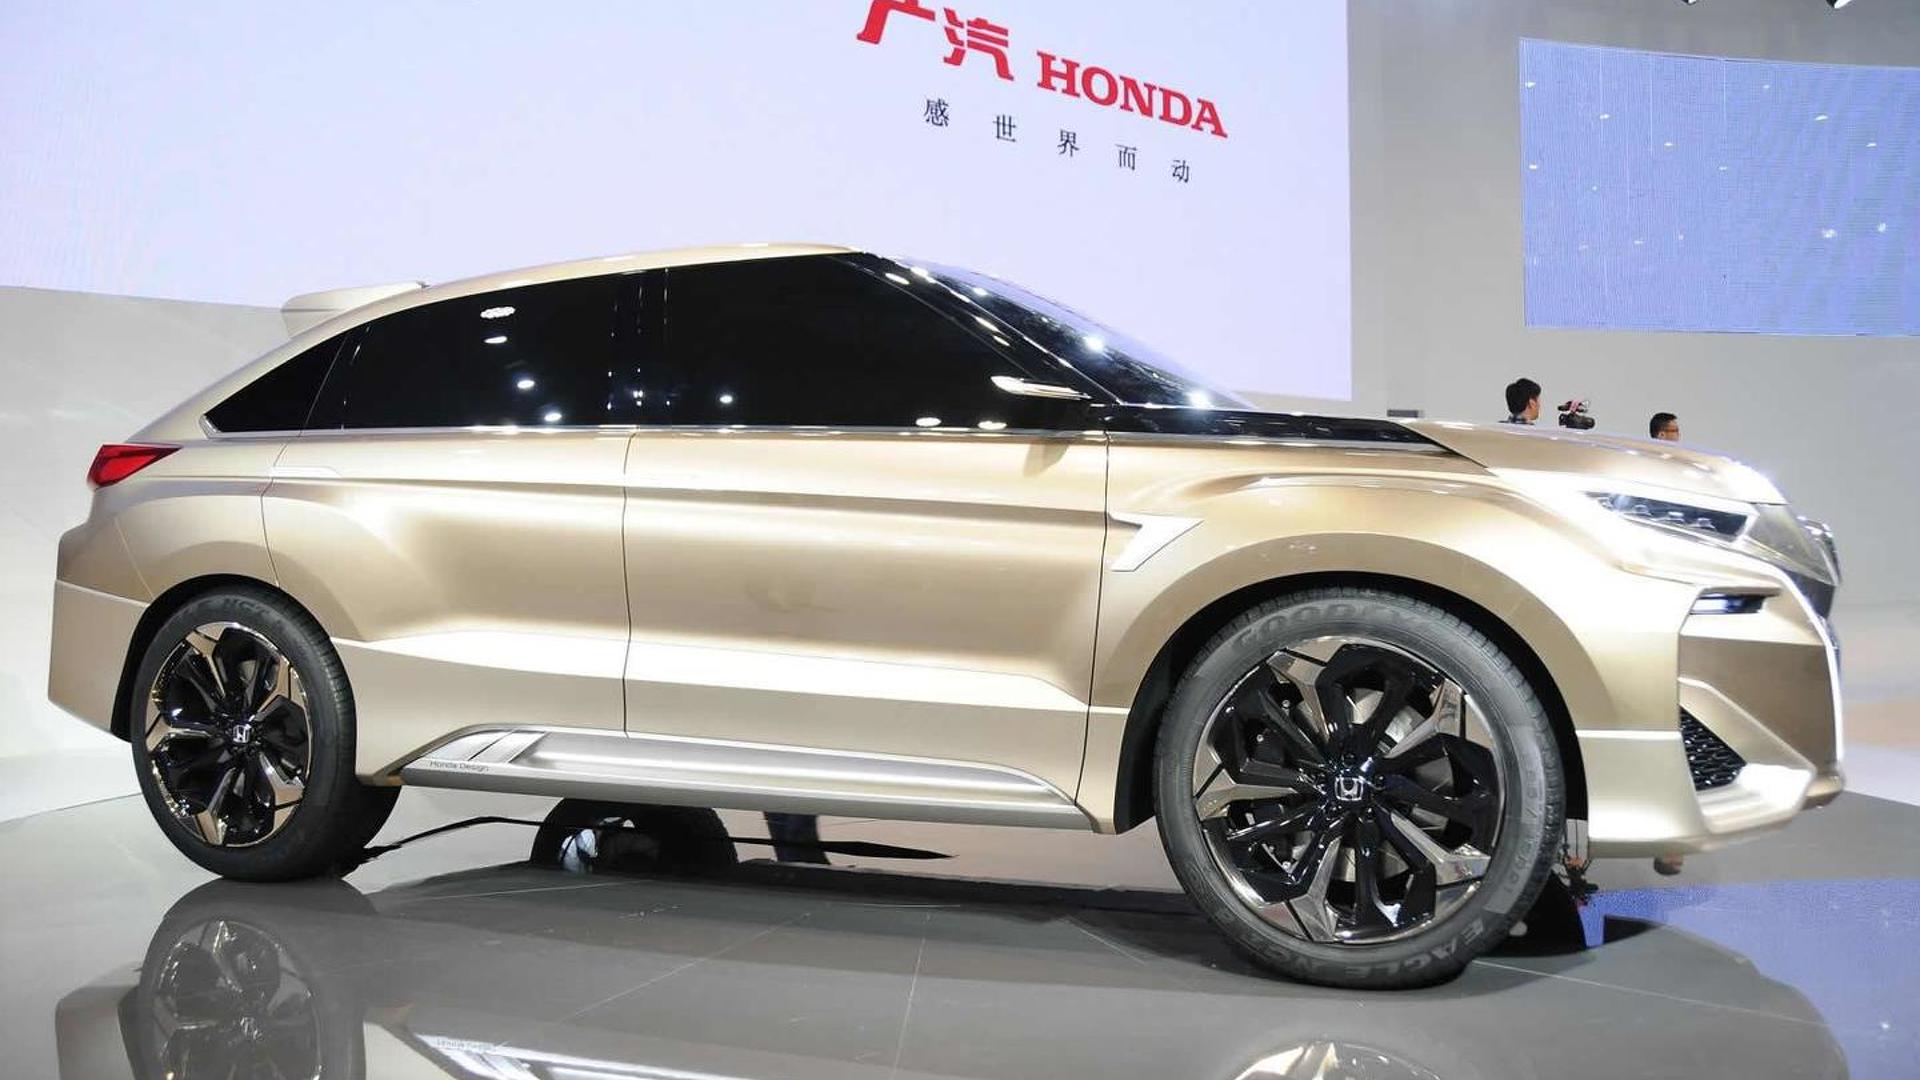 Honda Concept D Wallpapers